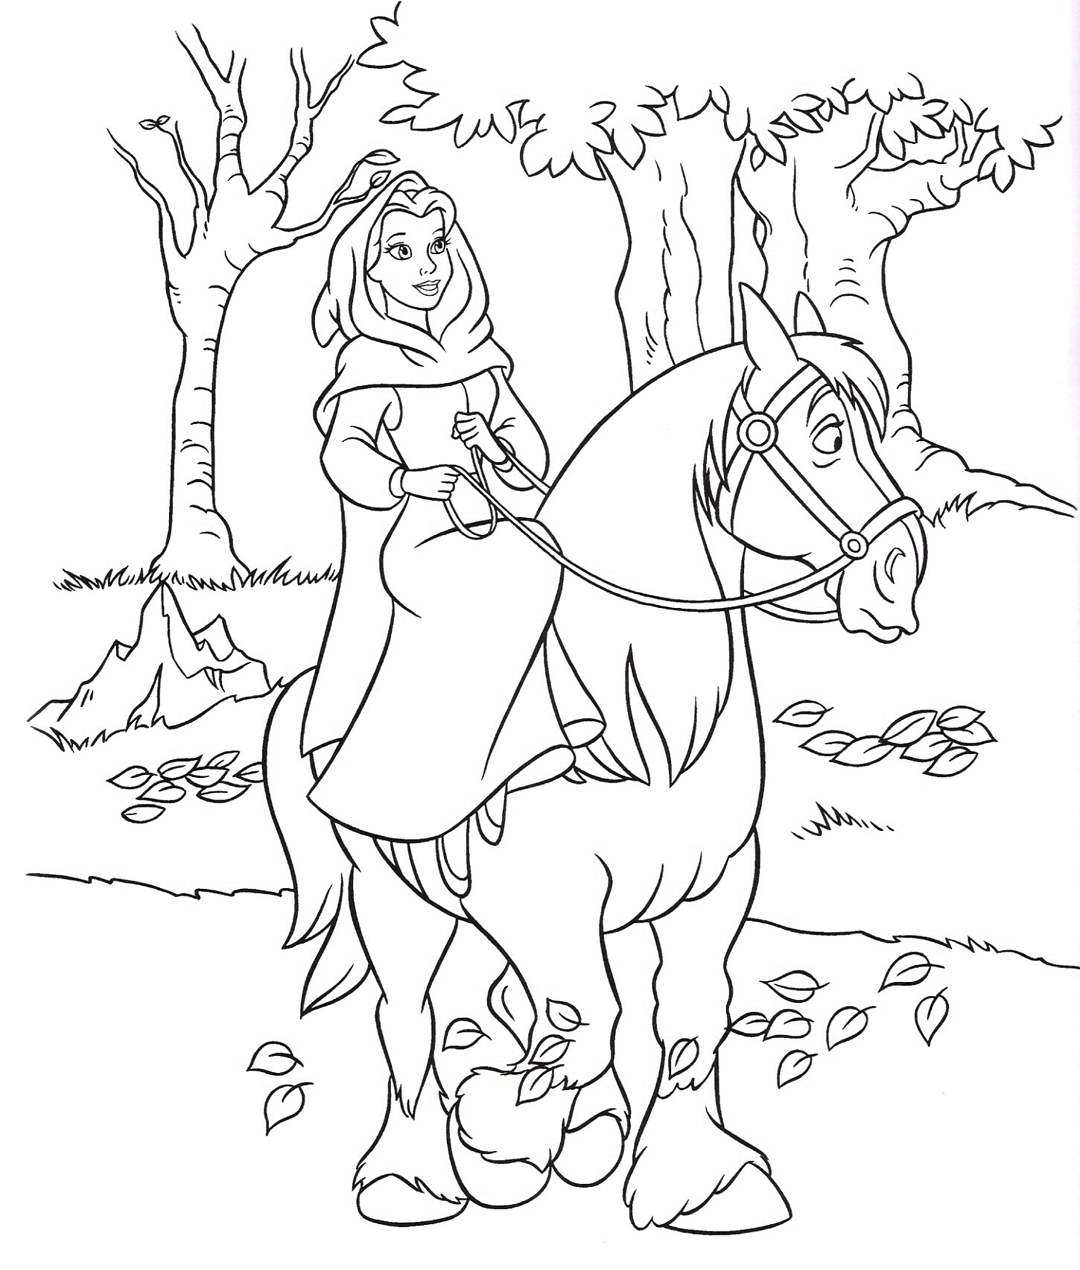 Принцесса на лошади раскраска